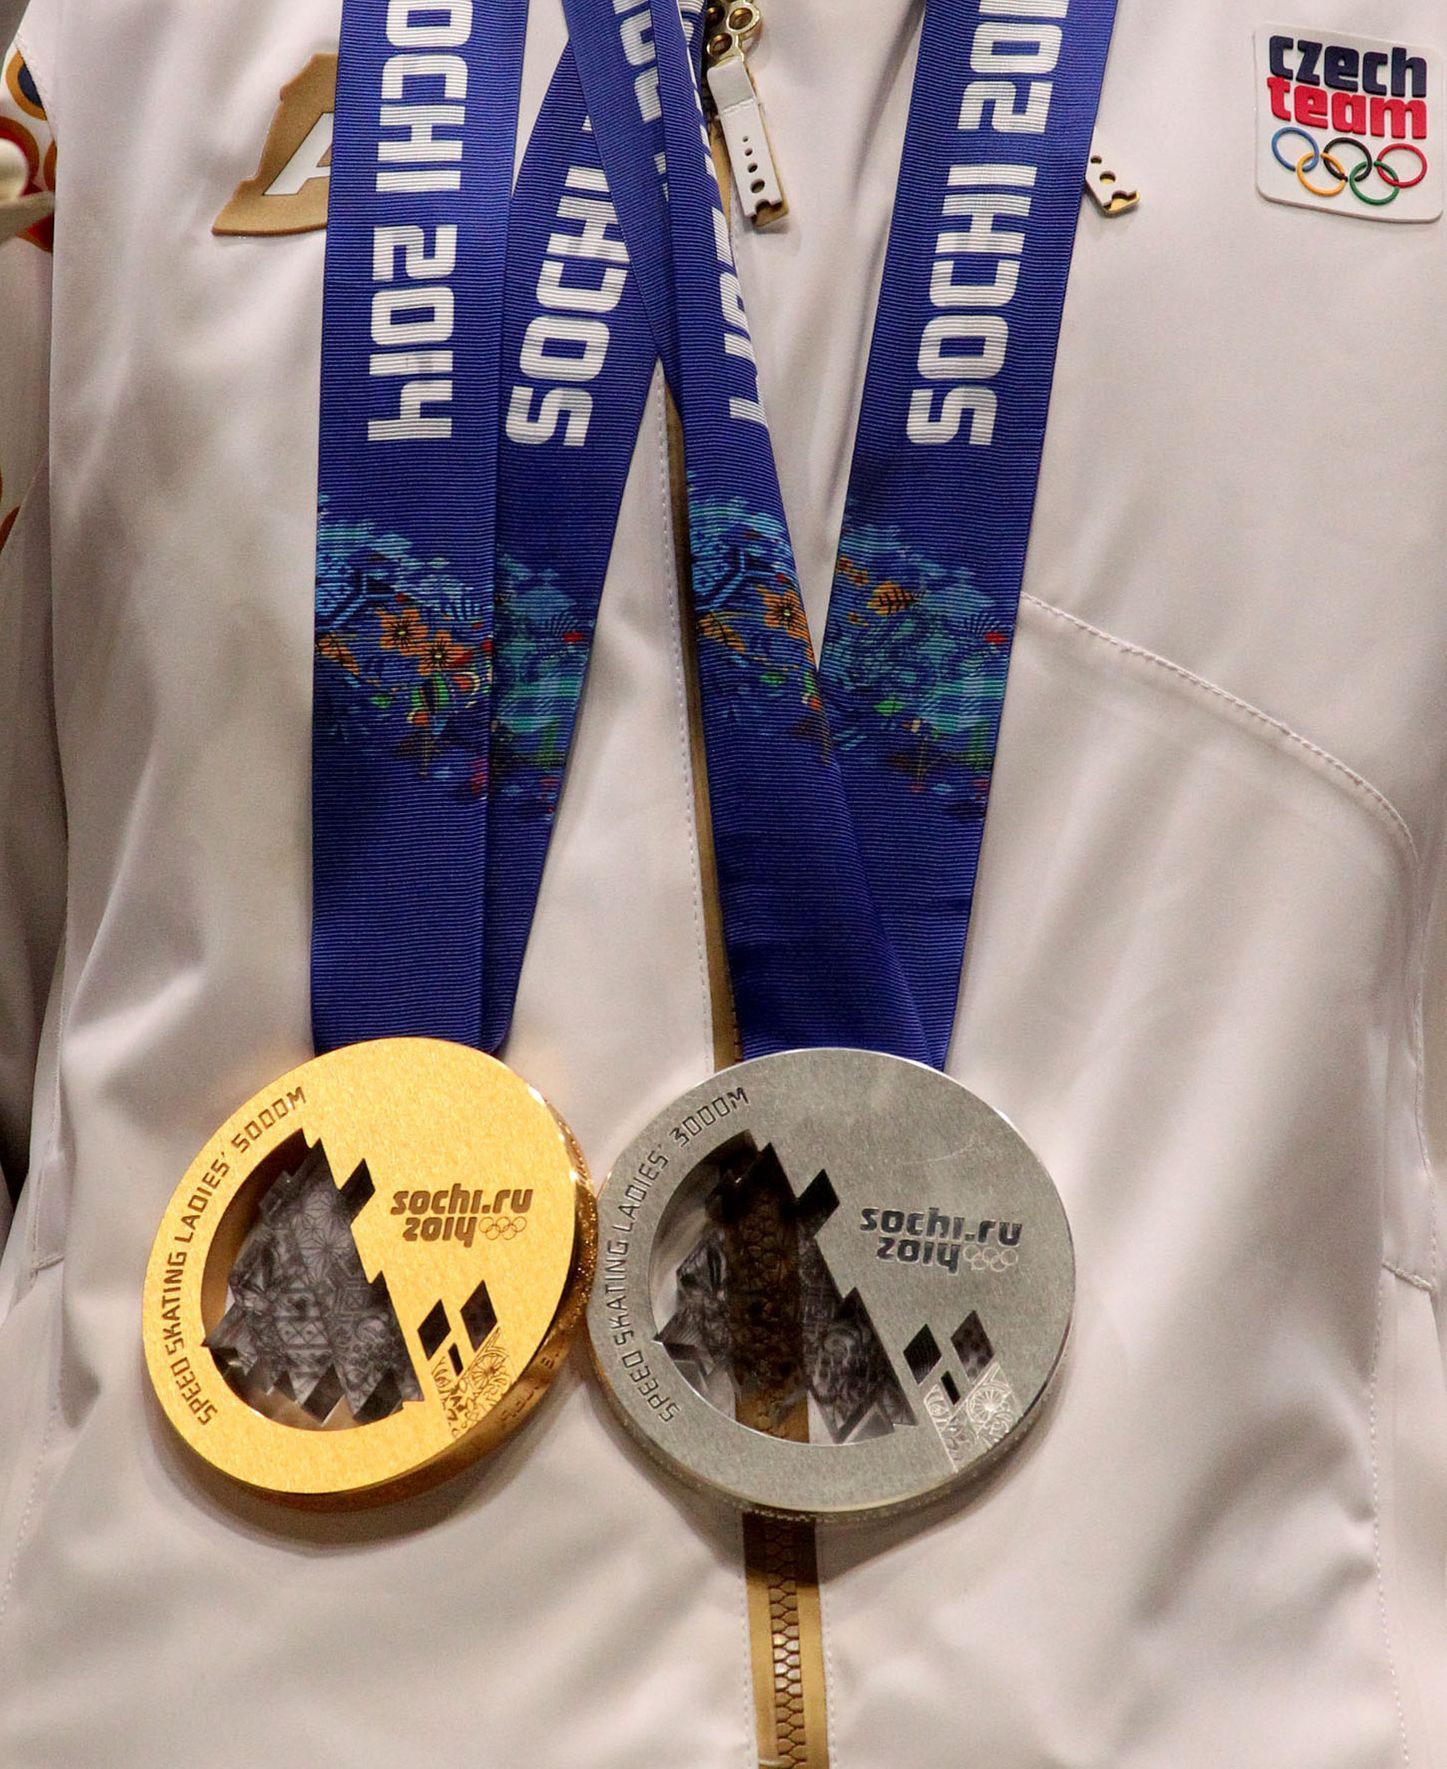 Letná, přivítání olympioniků ze Soči: Martina Sáblíková a její medaile